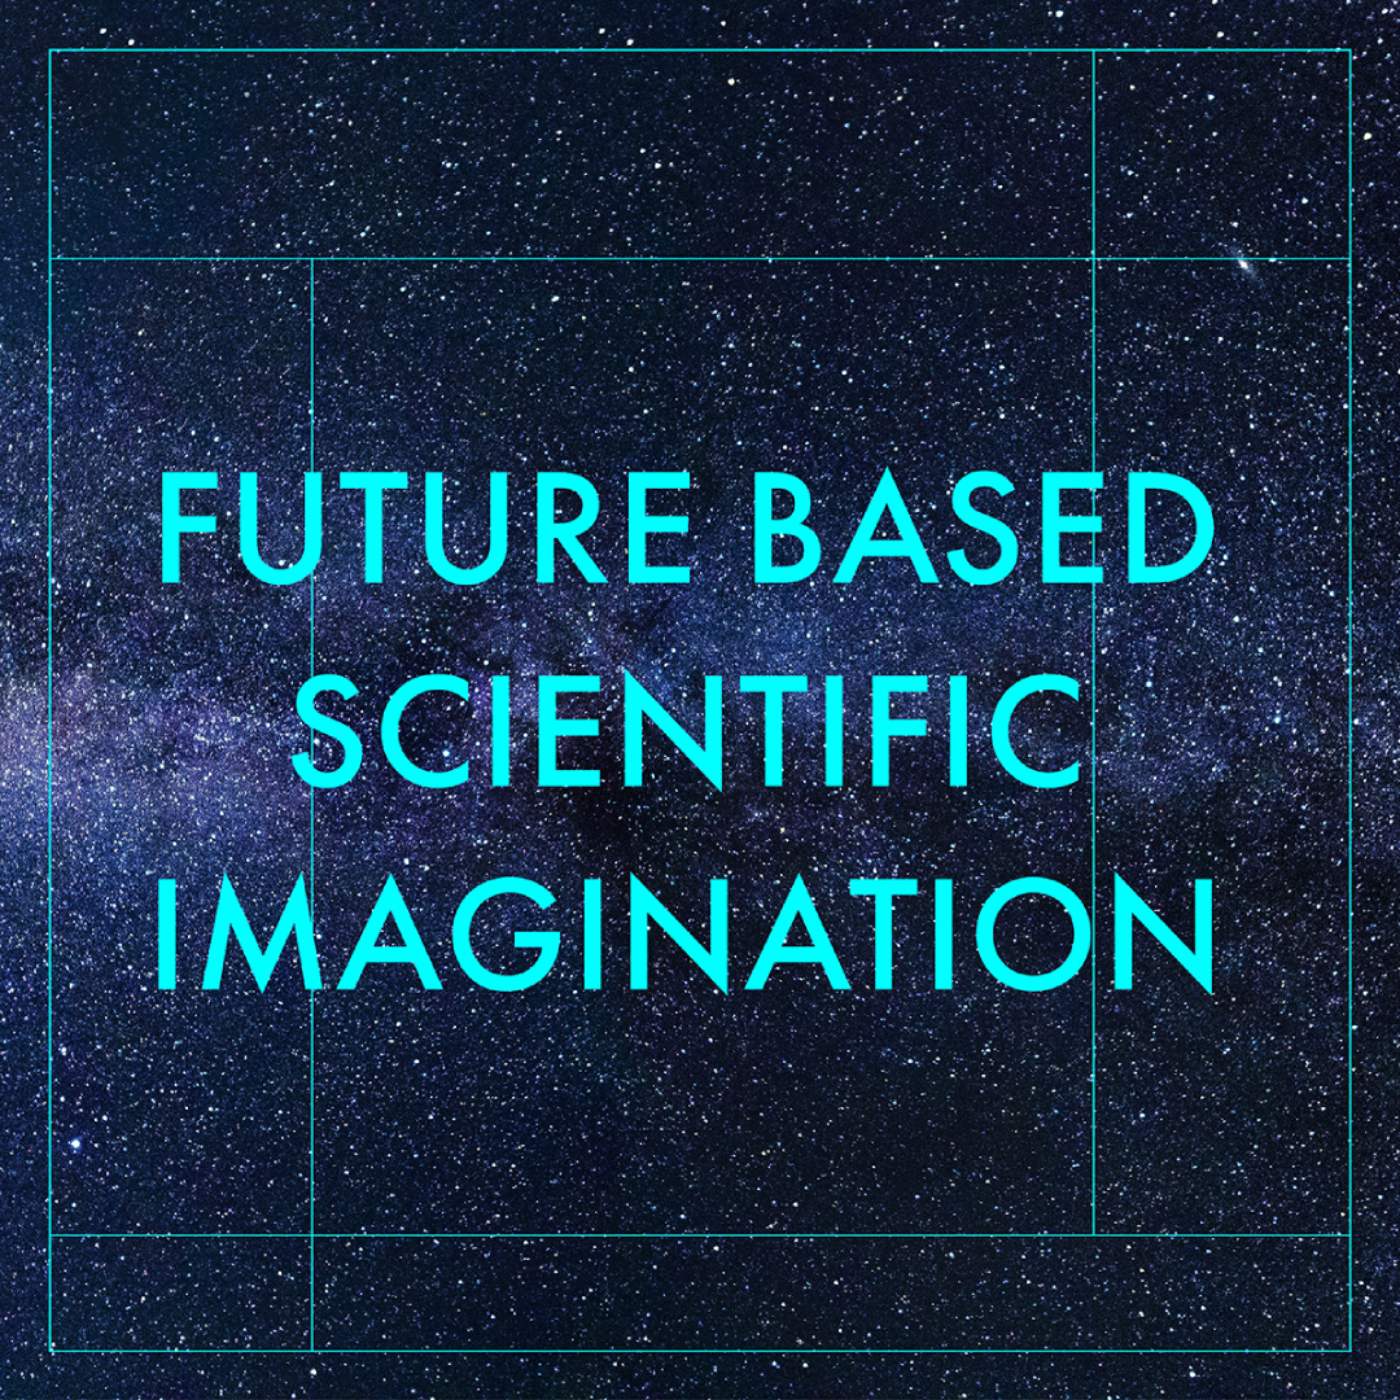 Scientific Imagination